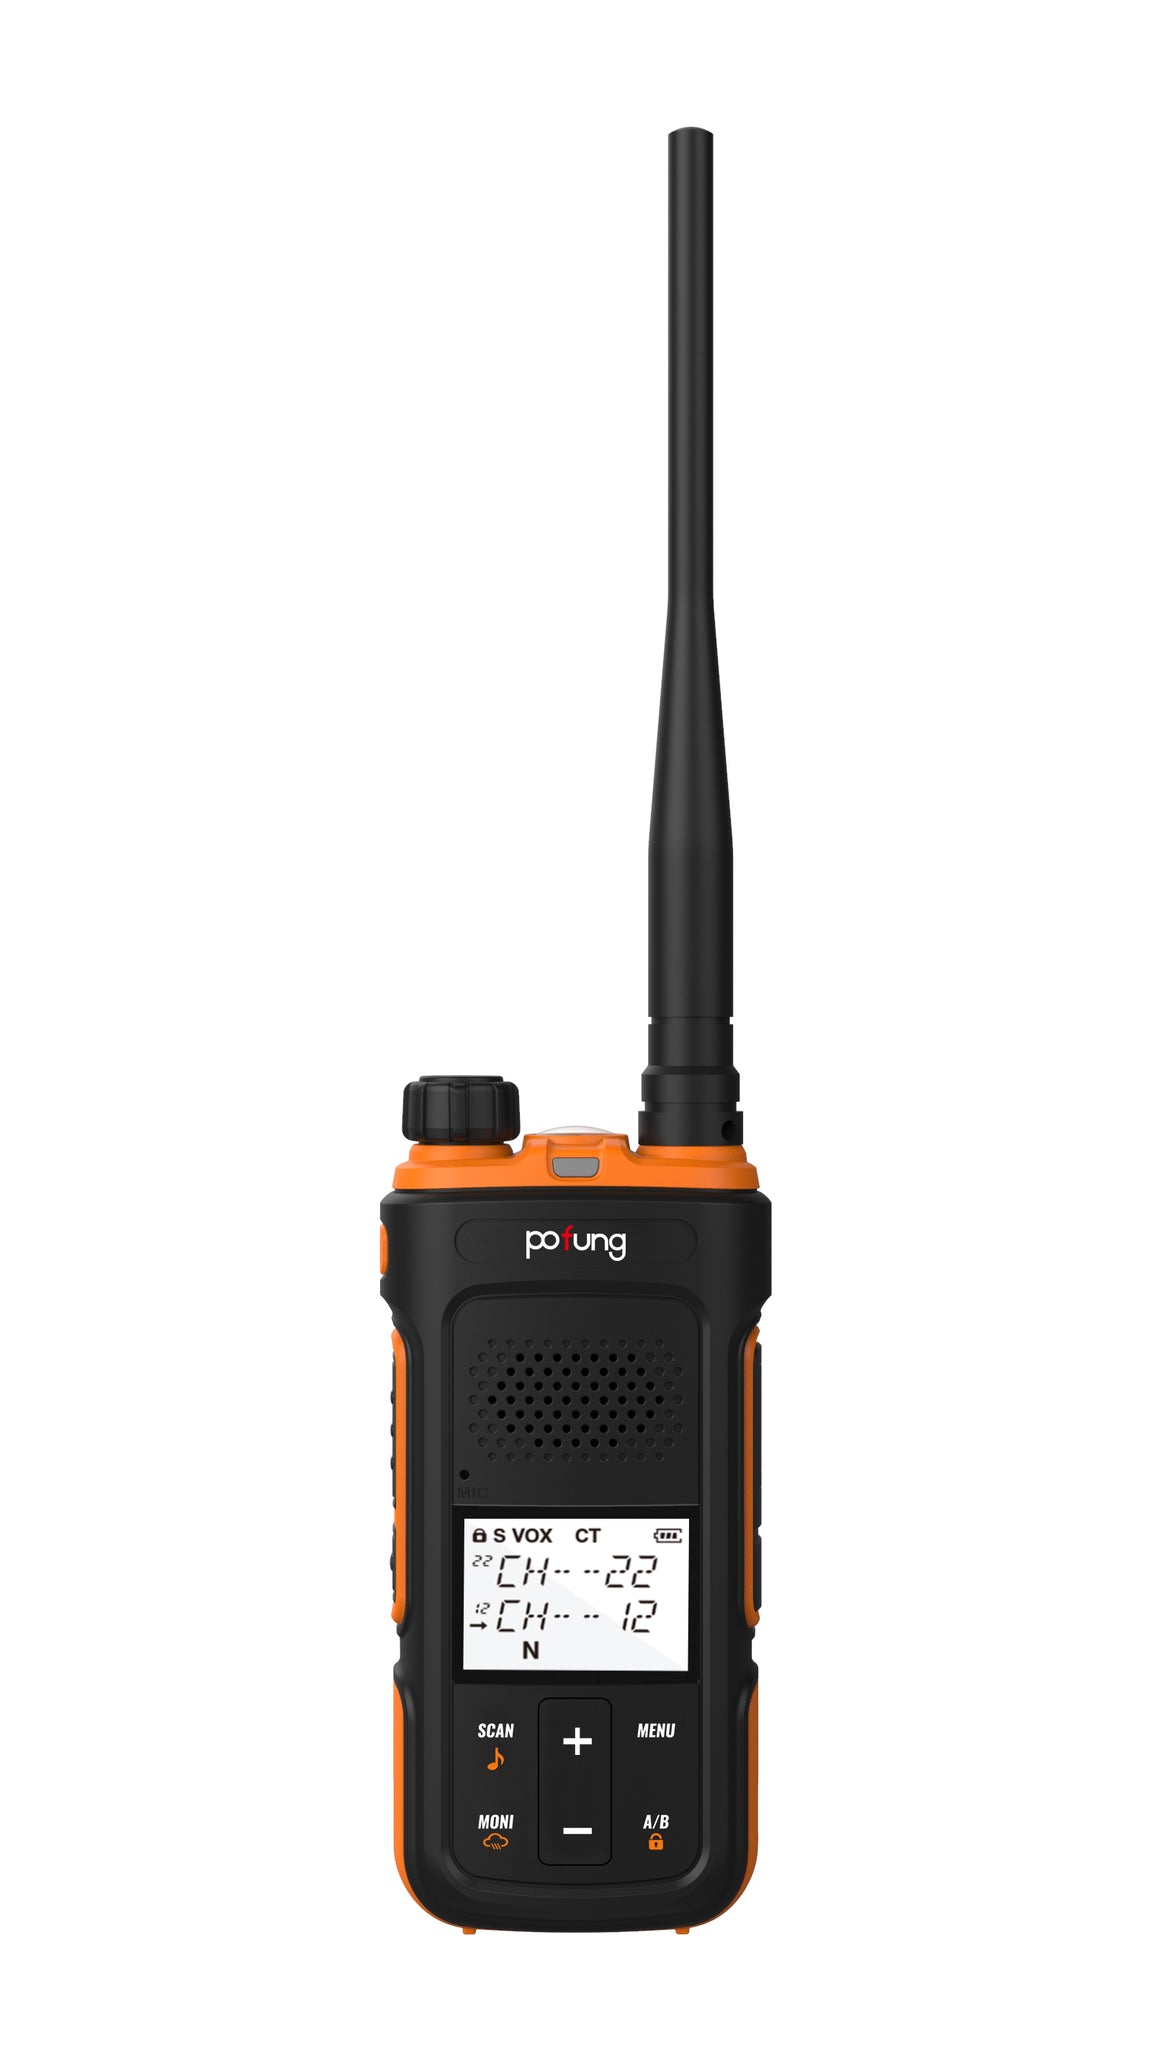 Baofeng 2 pcs talkie Walkie– équipement de Communication Radio